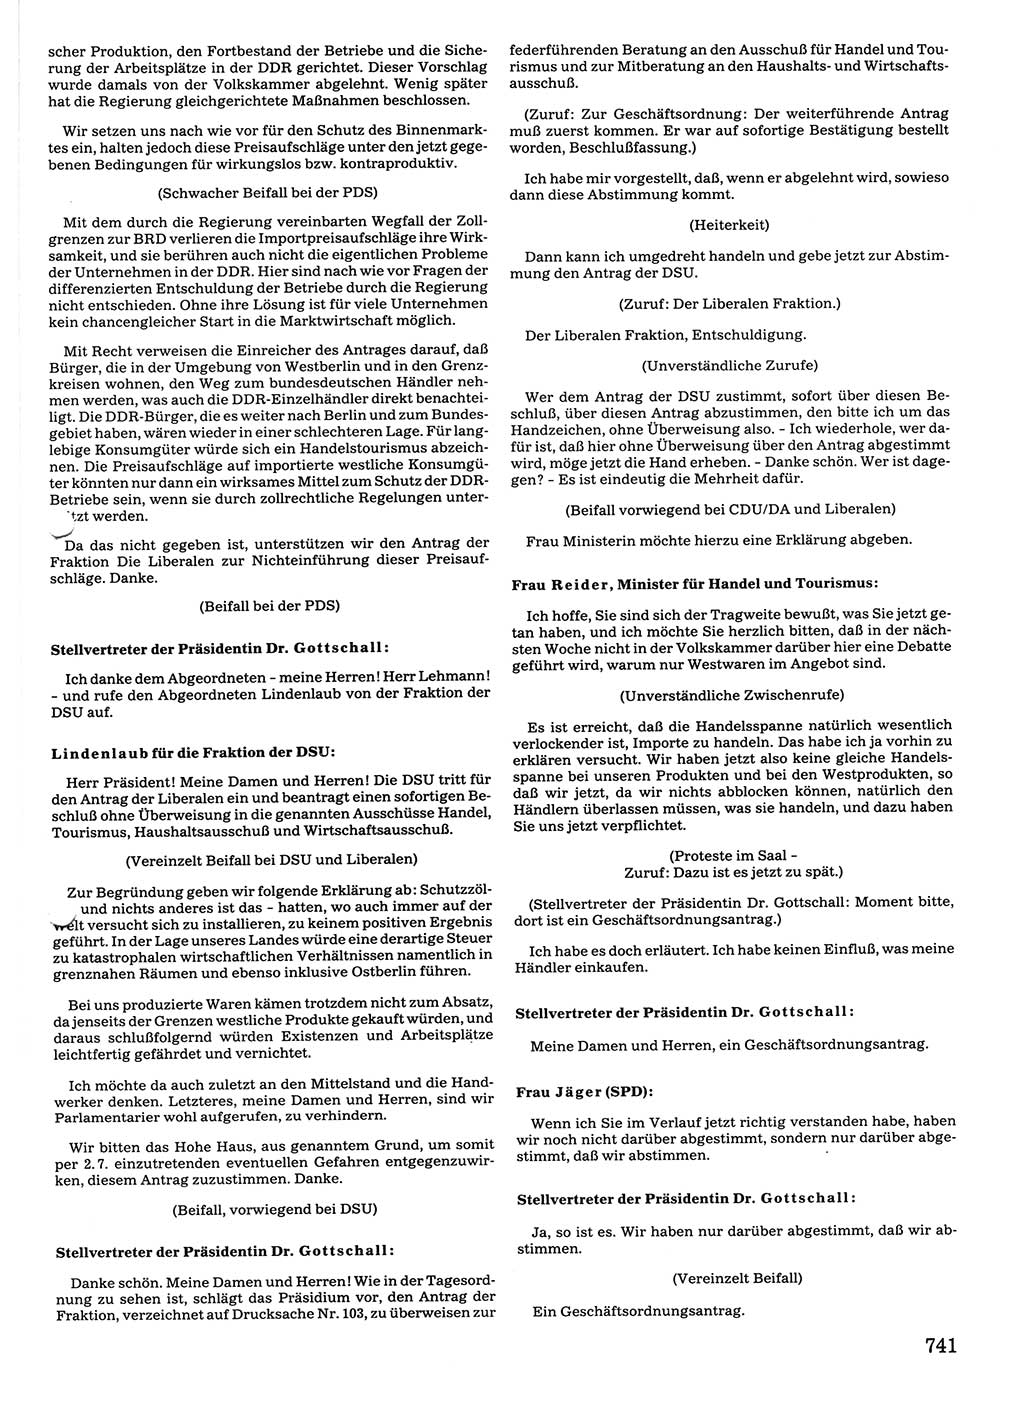 Tagungen der Volkskammer (VK) der Deutschen Demokratischen Republik (DDR), 10. Wahlperiode 1990, Seite 741 (VK. DDR 10. WP. 1990, Prot. Tg. 1-38, 5.4.-2.10.1990, S. 741)